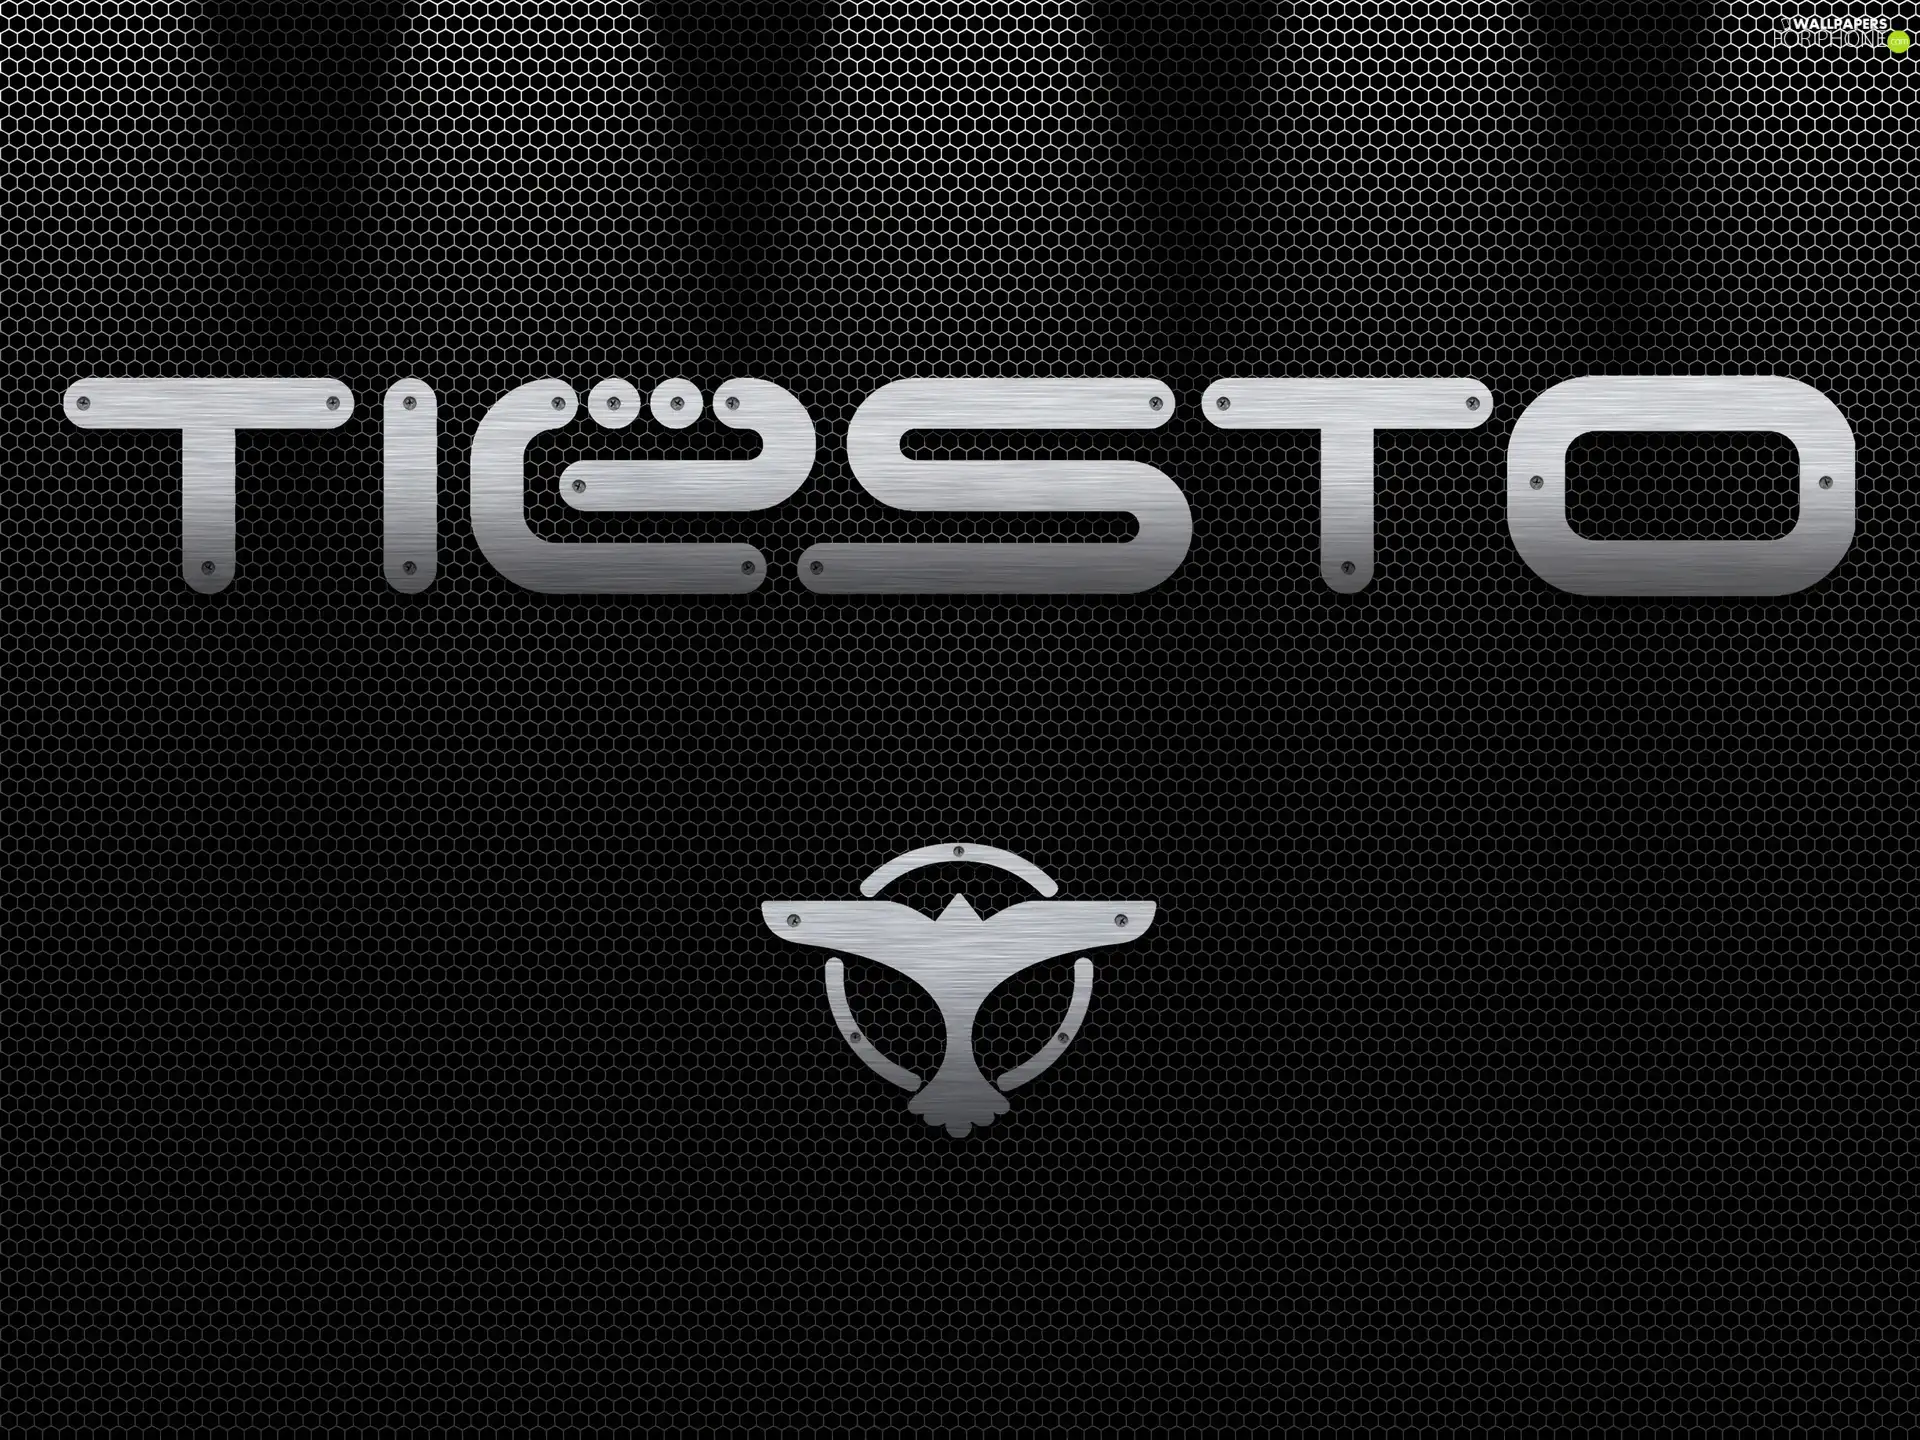 DJ Tiesto, text